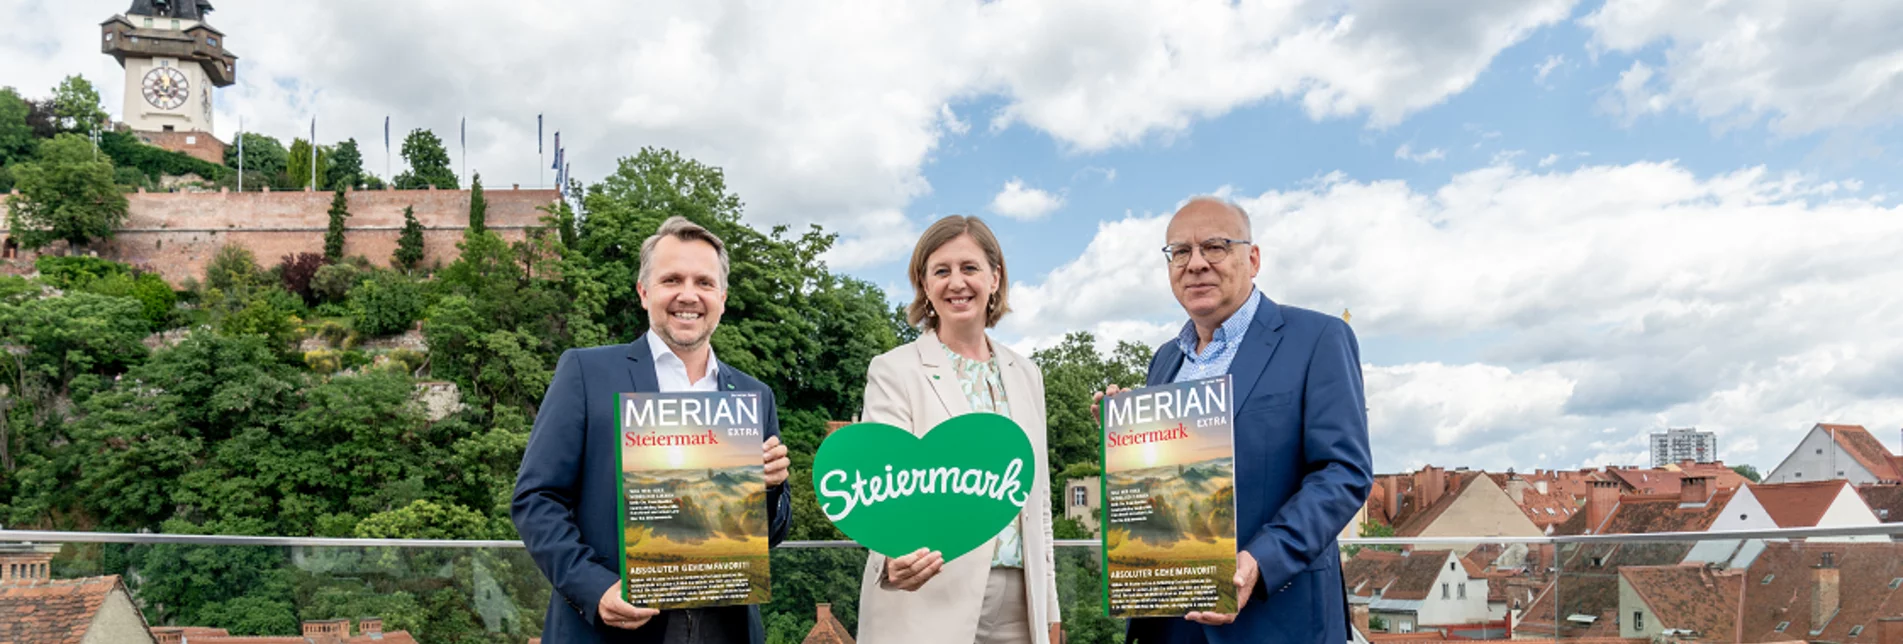 Von links: Michael Feiertag (GF STG), Landesrätin Barbara Eibinger-Miedl, Hansjörg Falz (CR MERIAN) mit dem neuen MERIAN extra Steiermark.  | © STG / Jesse Streibl